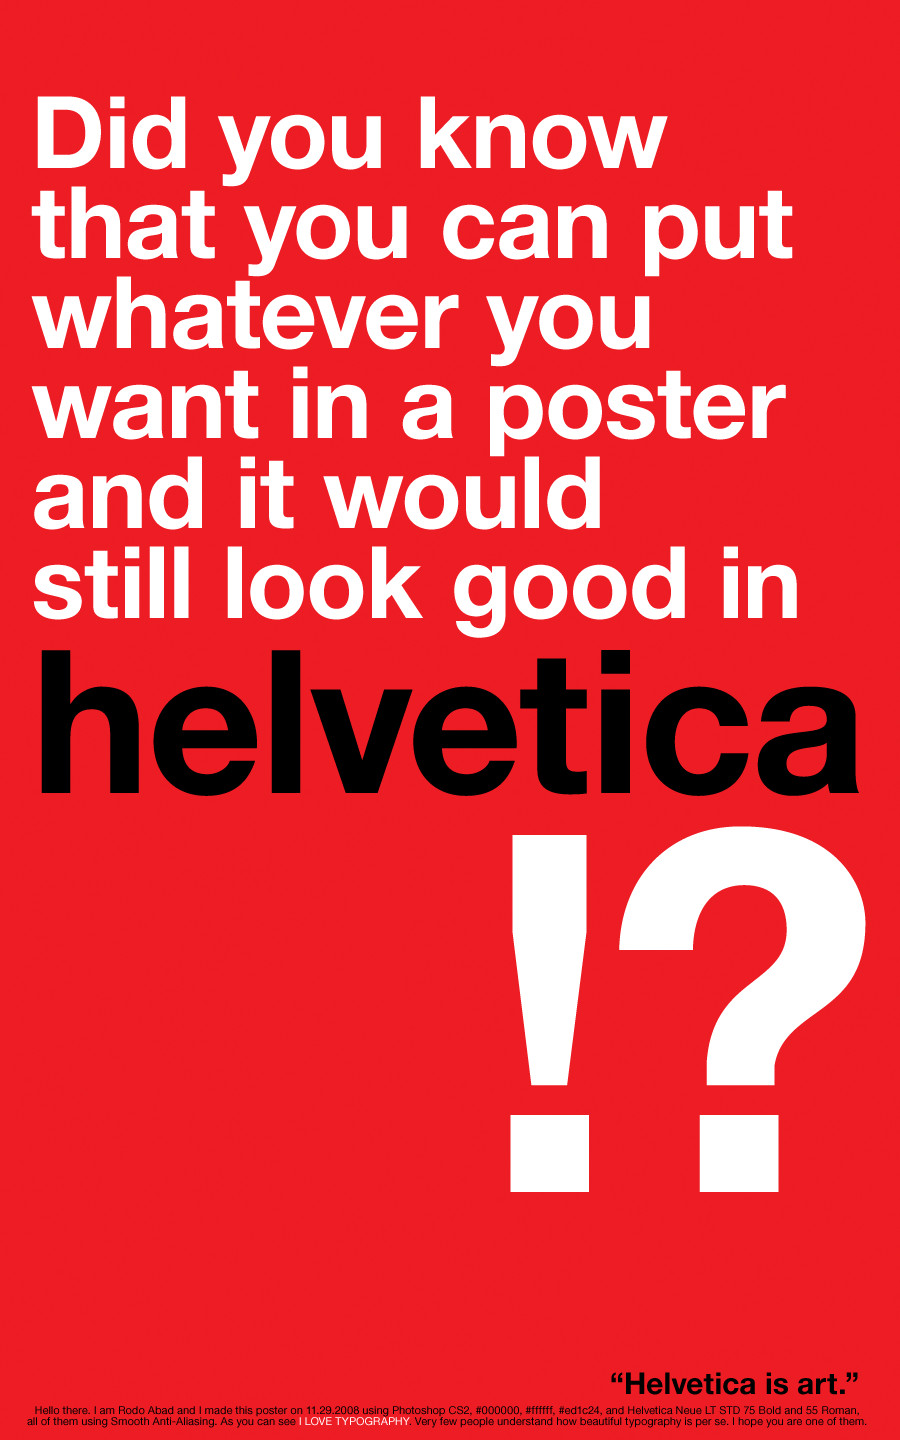 Helvetica is art.